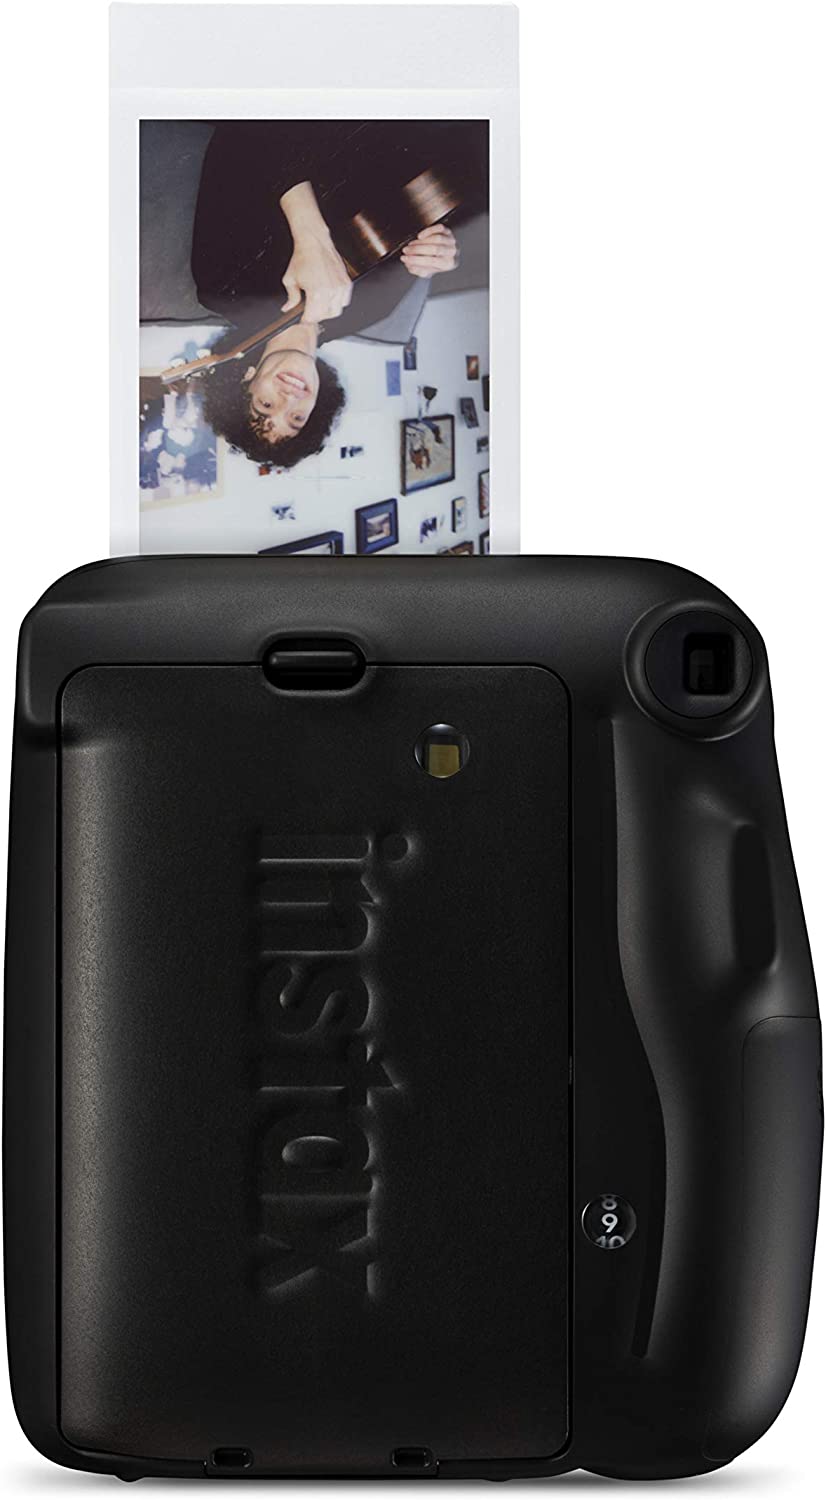 Fujifilm Instax Mini 11 Appareil photo instantané gris anthracite - Taille d'image 62 x 46 mm - Flash automatique - Mini miroir pour selfie - Dragonne et 2 boutons d'obturation différents